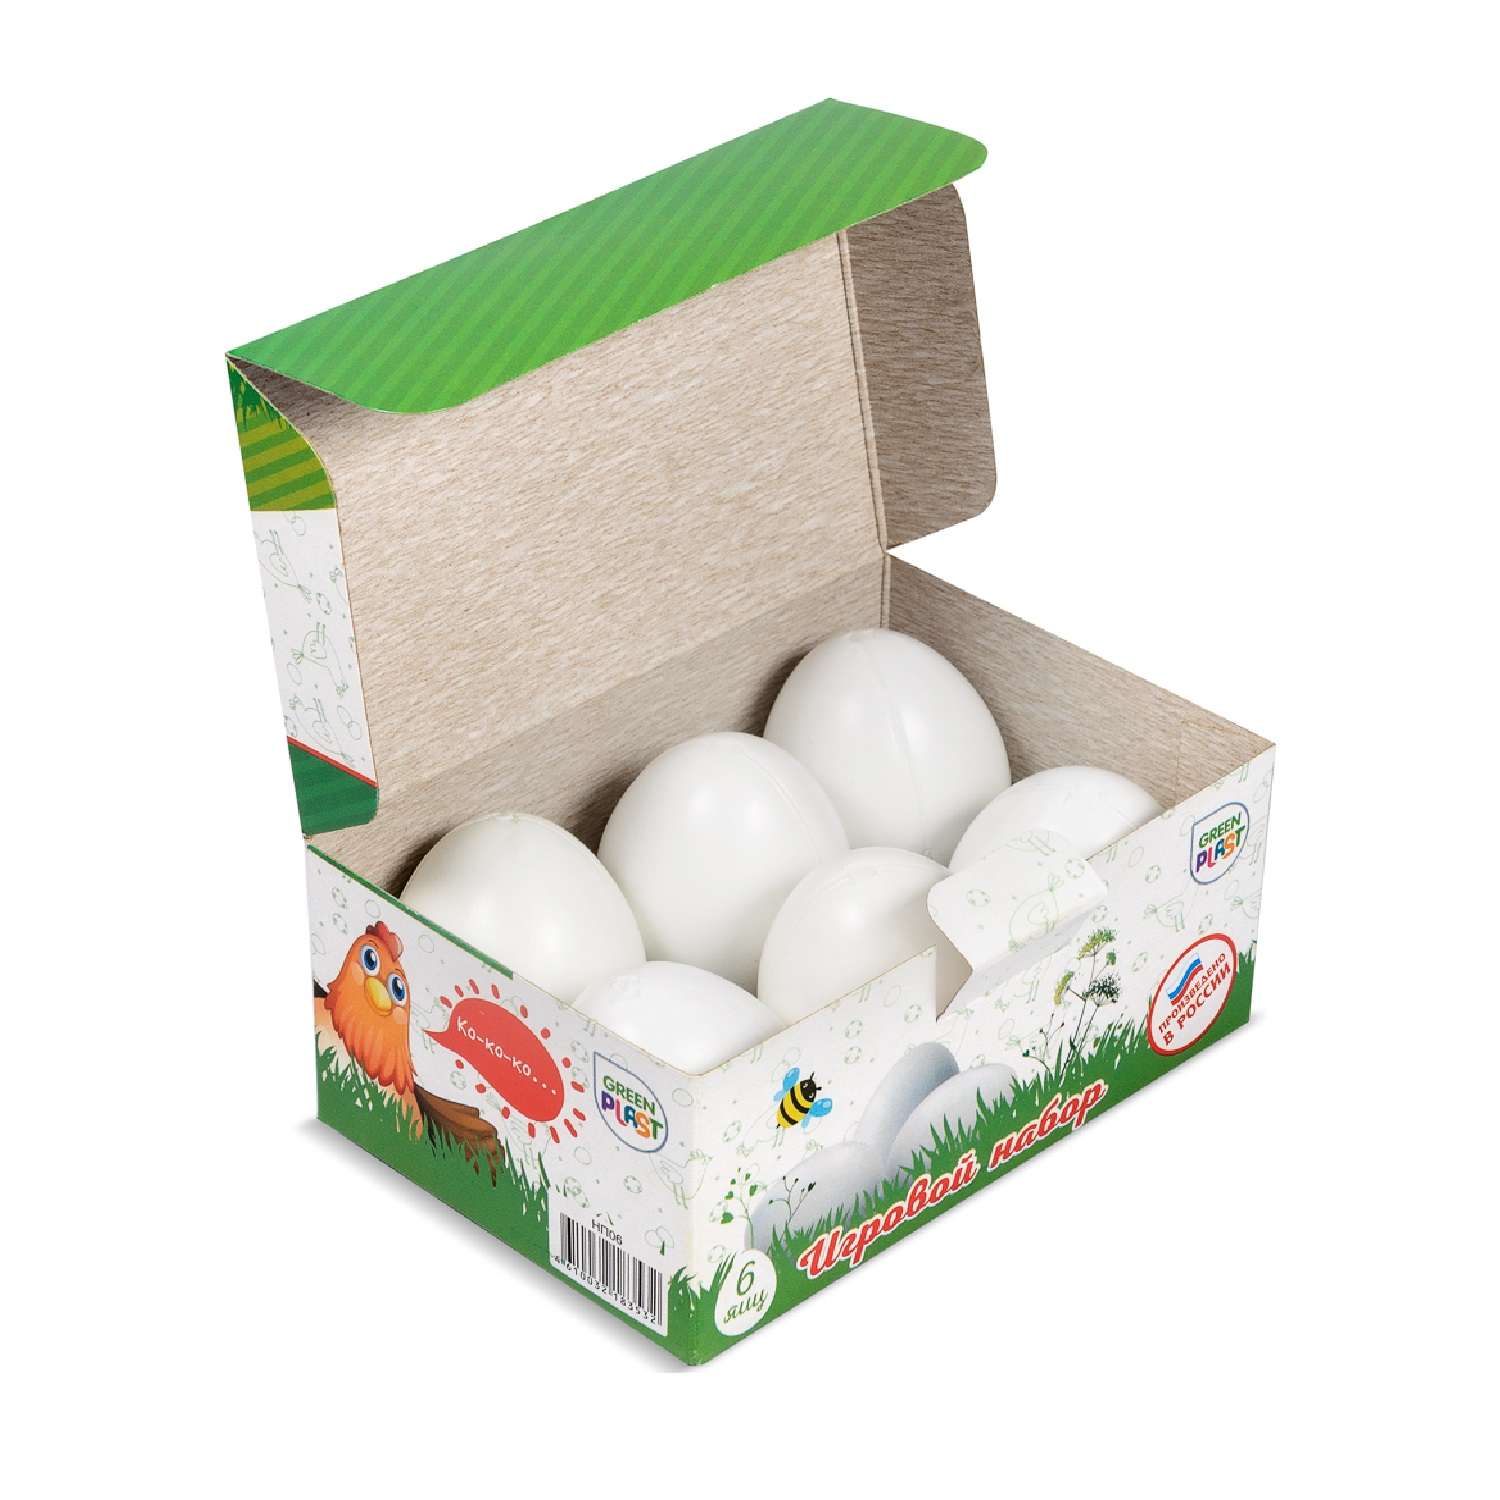 Игровой набор Green Plast продукты - яйца - фото 1